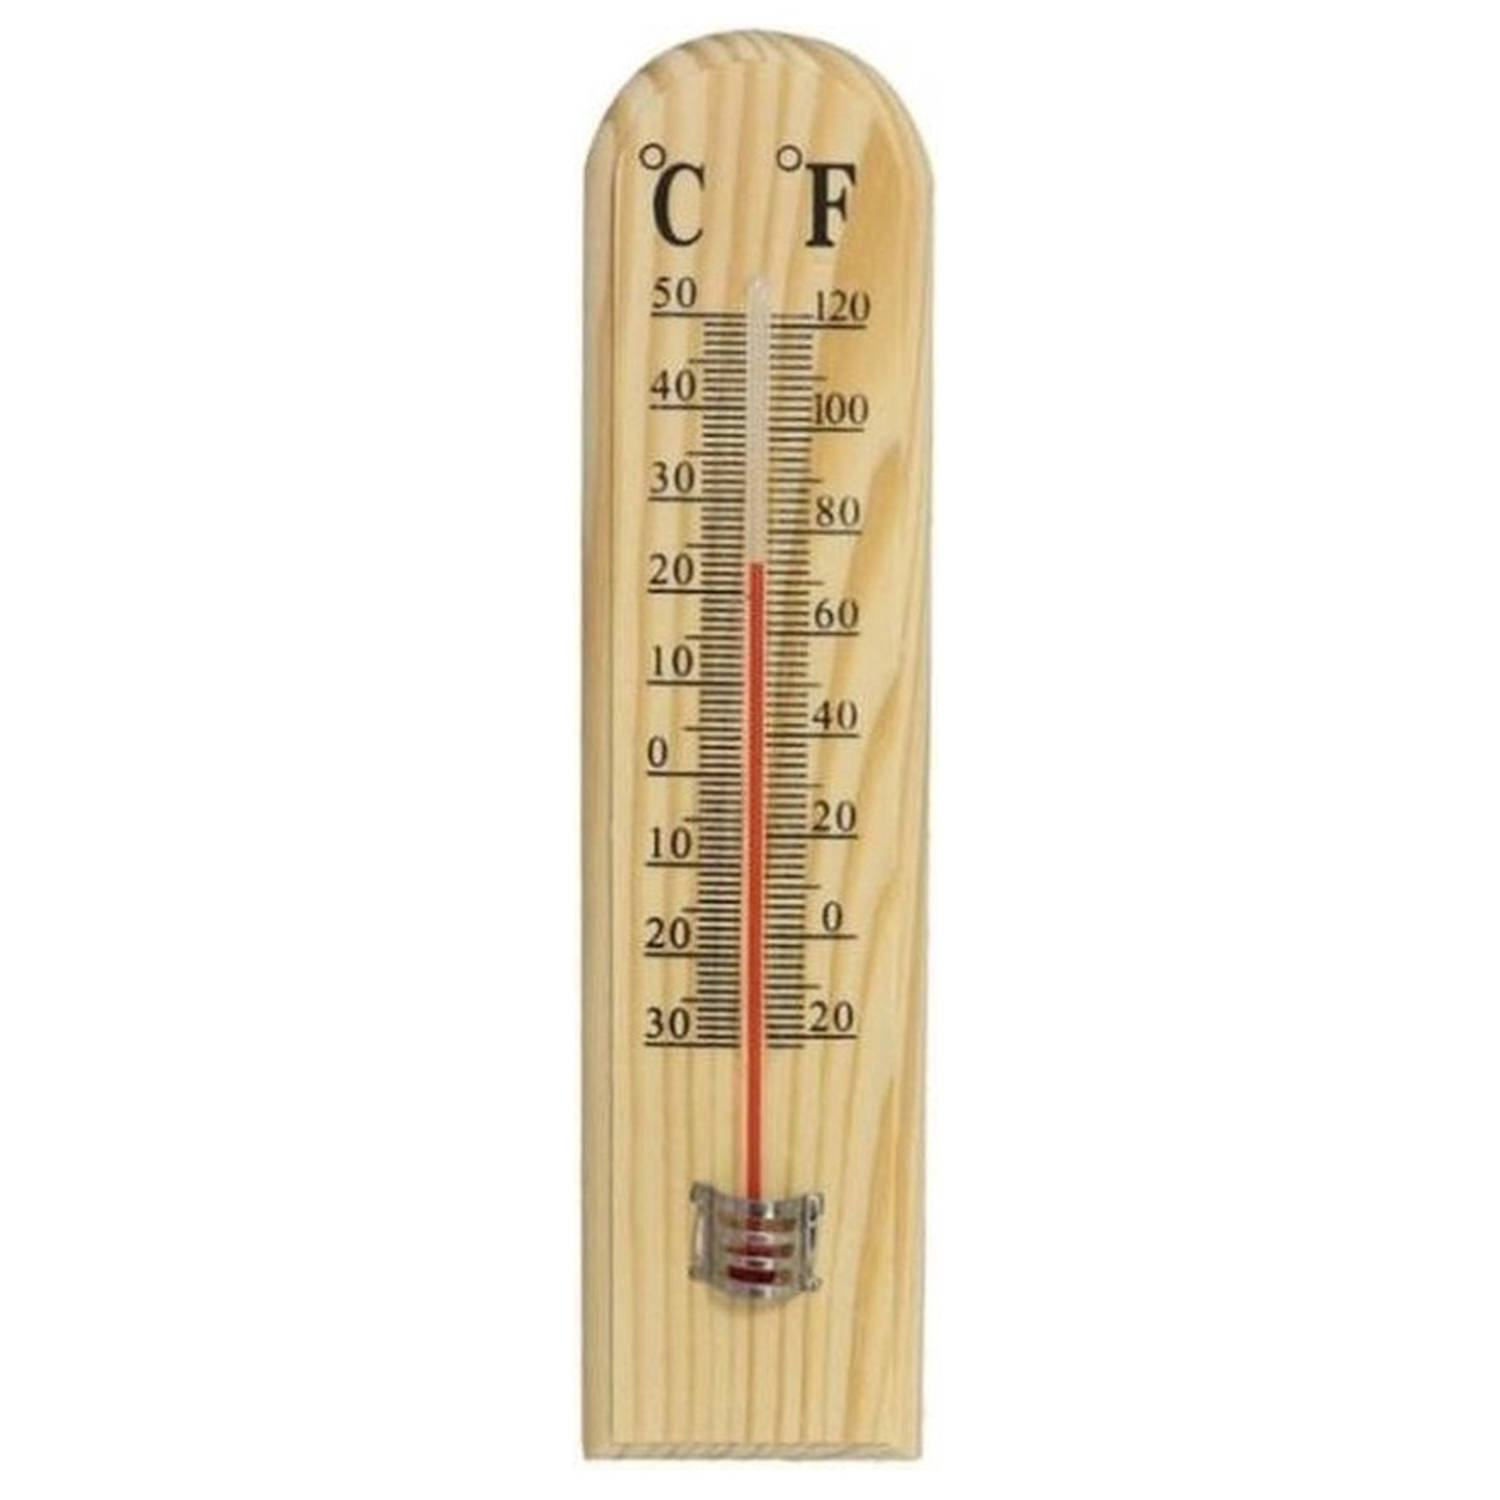 massa Tijdreeksen voorspelling Binnen/buiten thermometer hout 20 x 5 cm - Buitenthermometers | Blokker